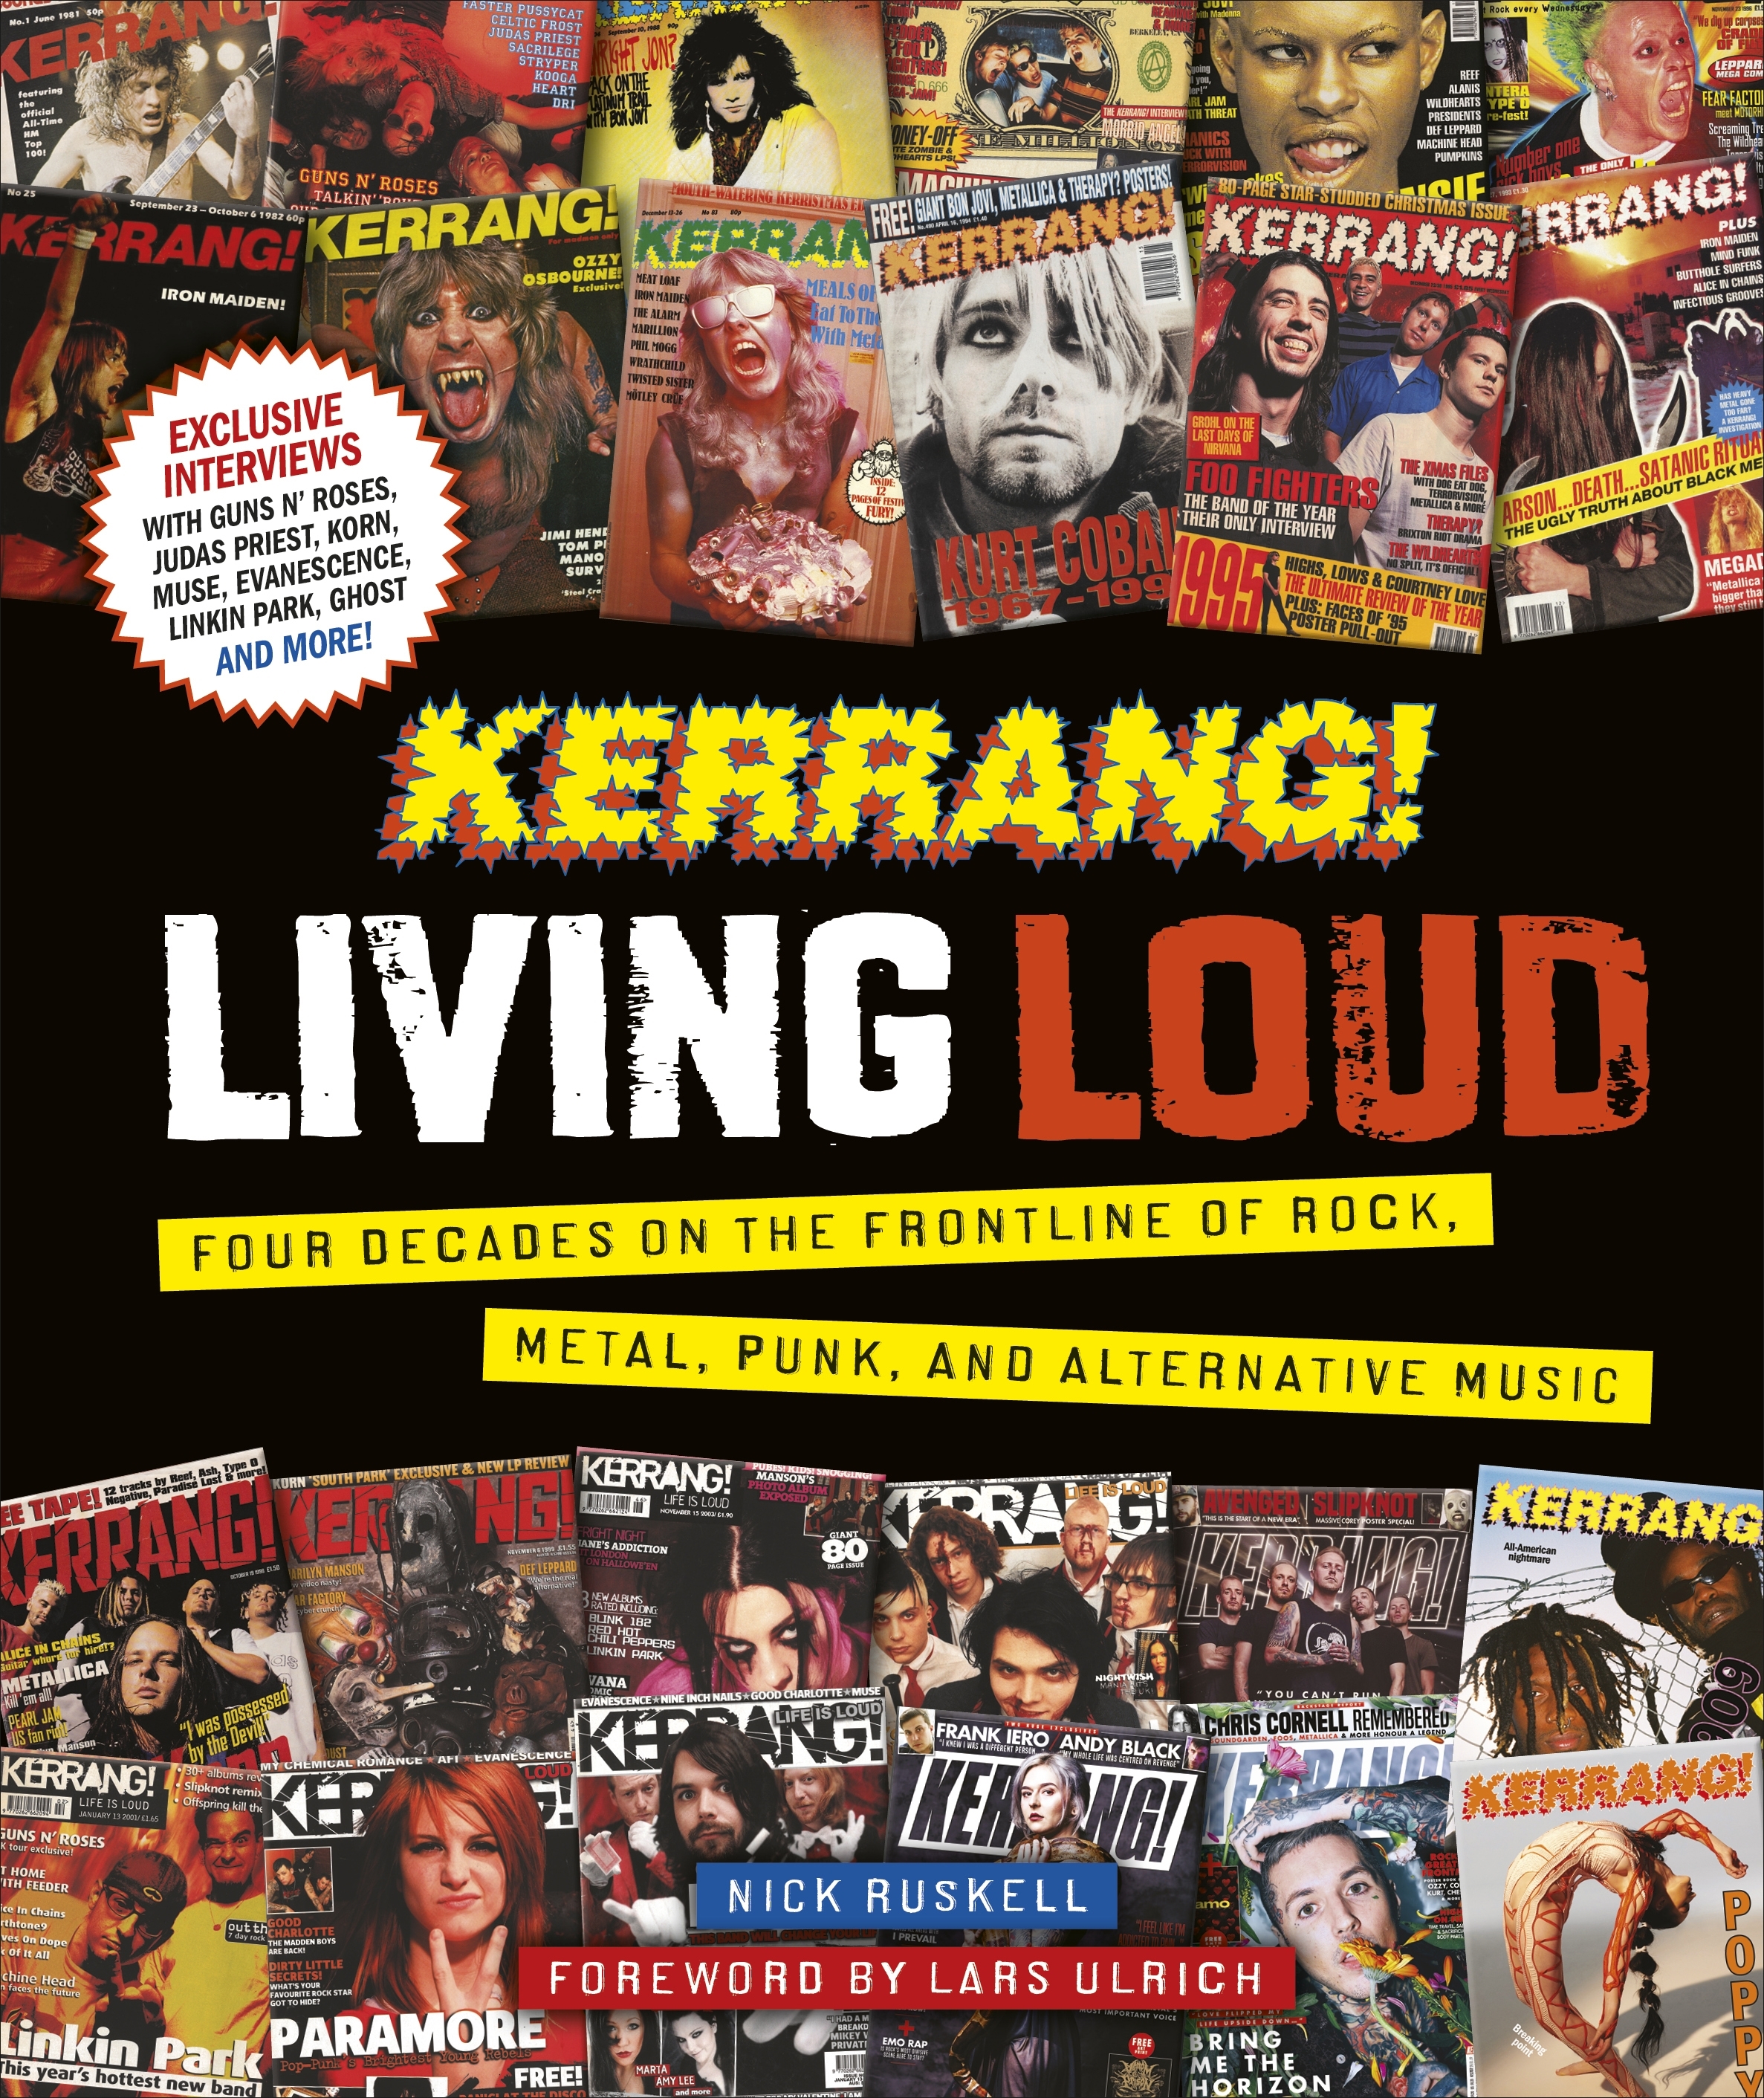 Kerrang! Living Loud